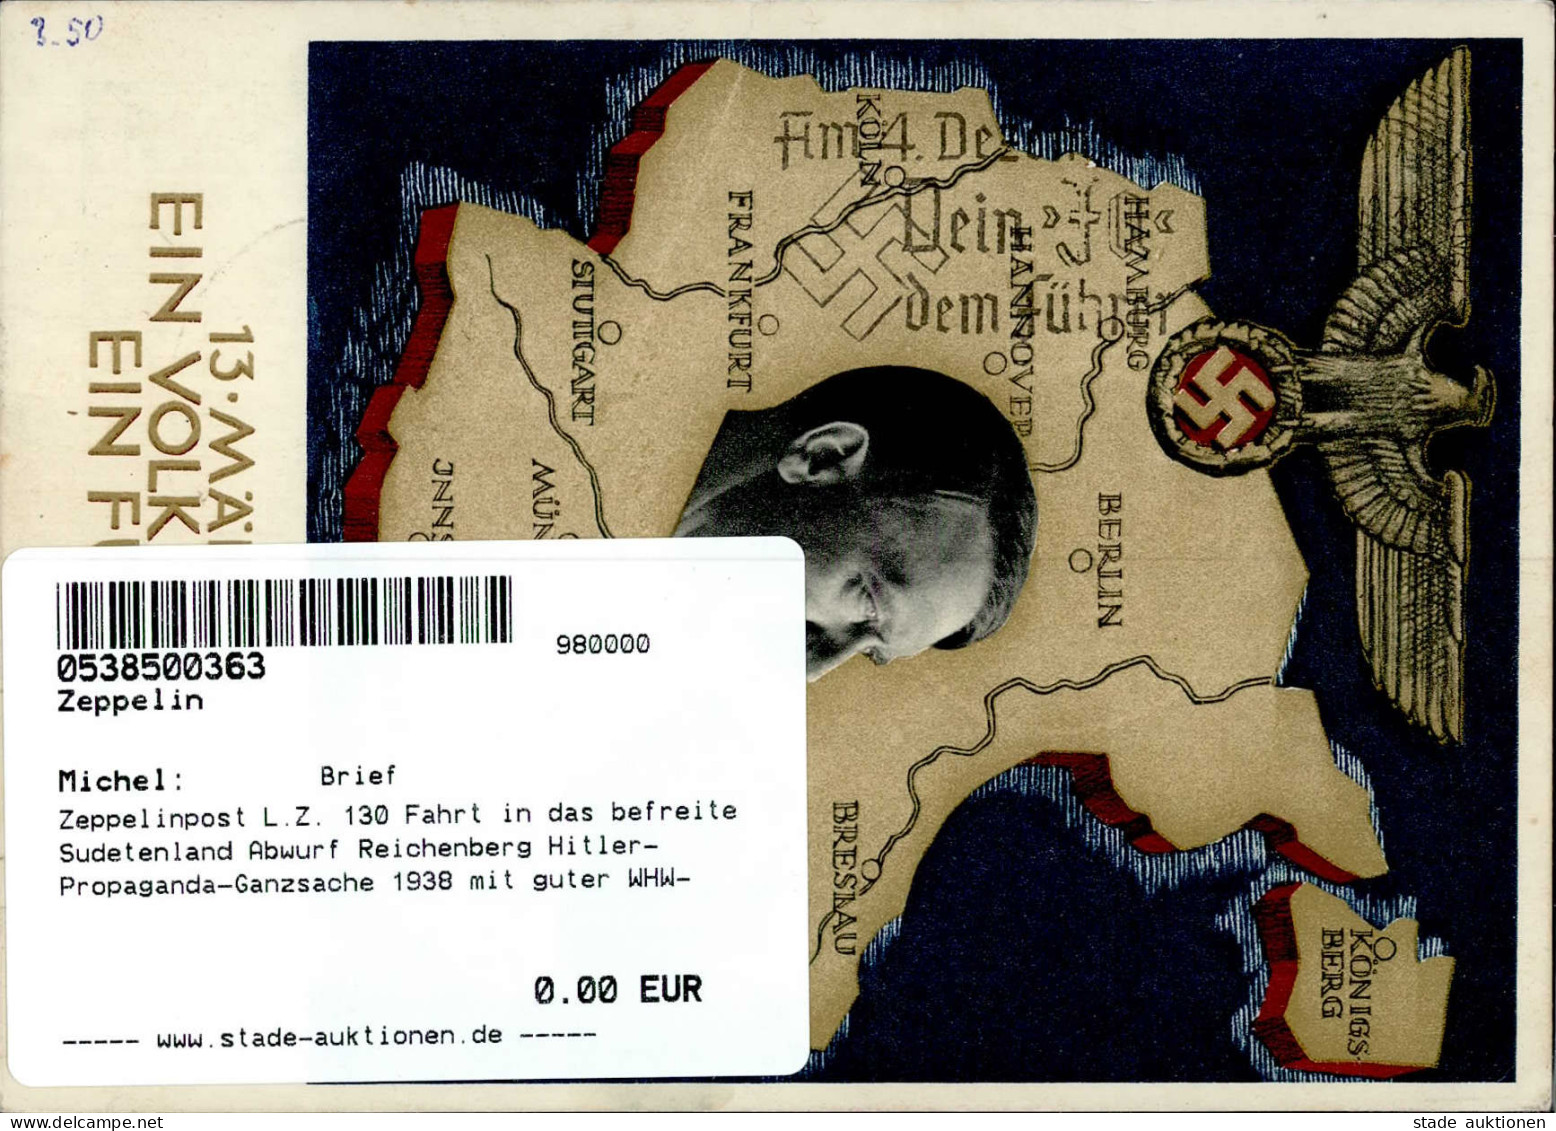 Zeppelinpost L.Z. 130 Fahrt In Das Befreite Sudetenland Abwurf Reichenberg Hitler-Propaganda-Ganzsache 1938 Mit Guter WH - Zeppeline